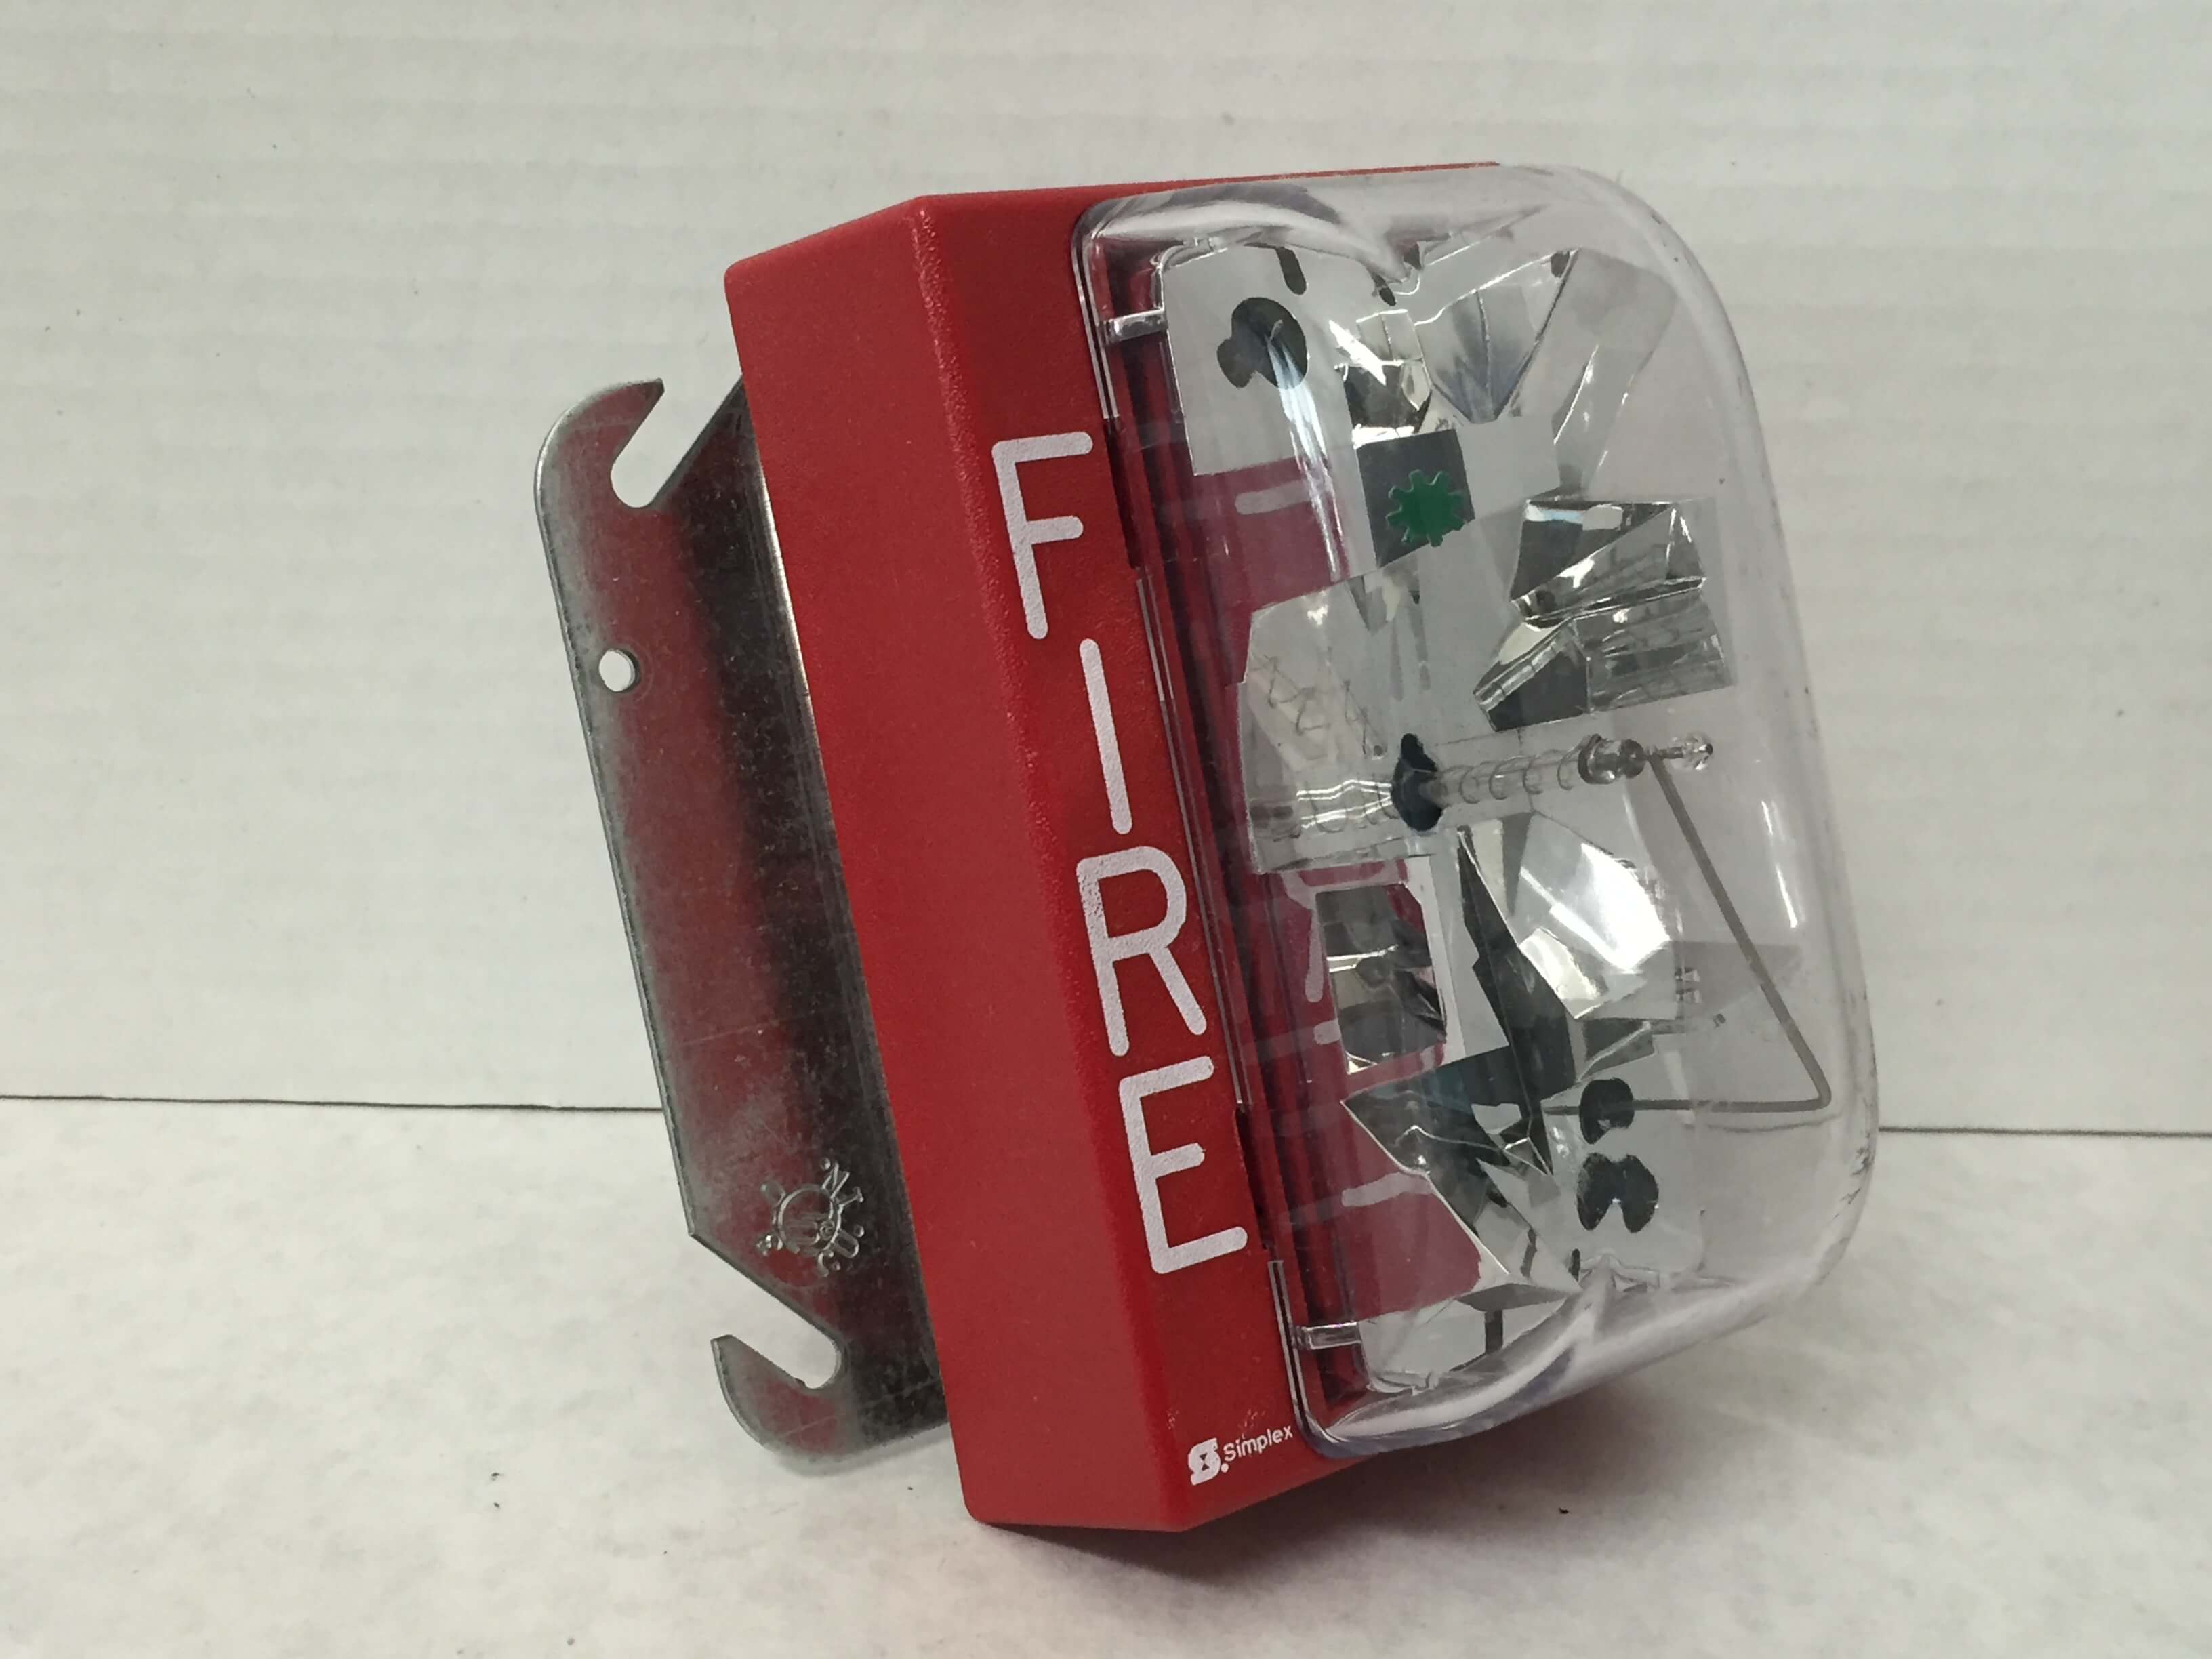 Simplex 4904-9137 - FireAlarms.tv - jjinc24/U8oL0's Fire Alarm ...